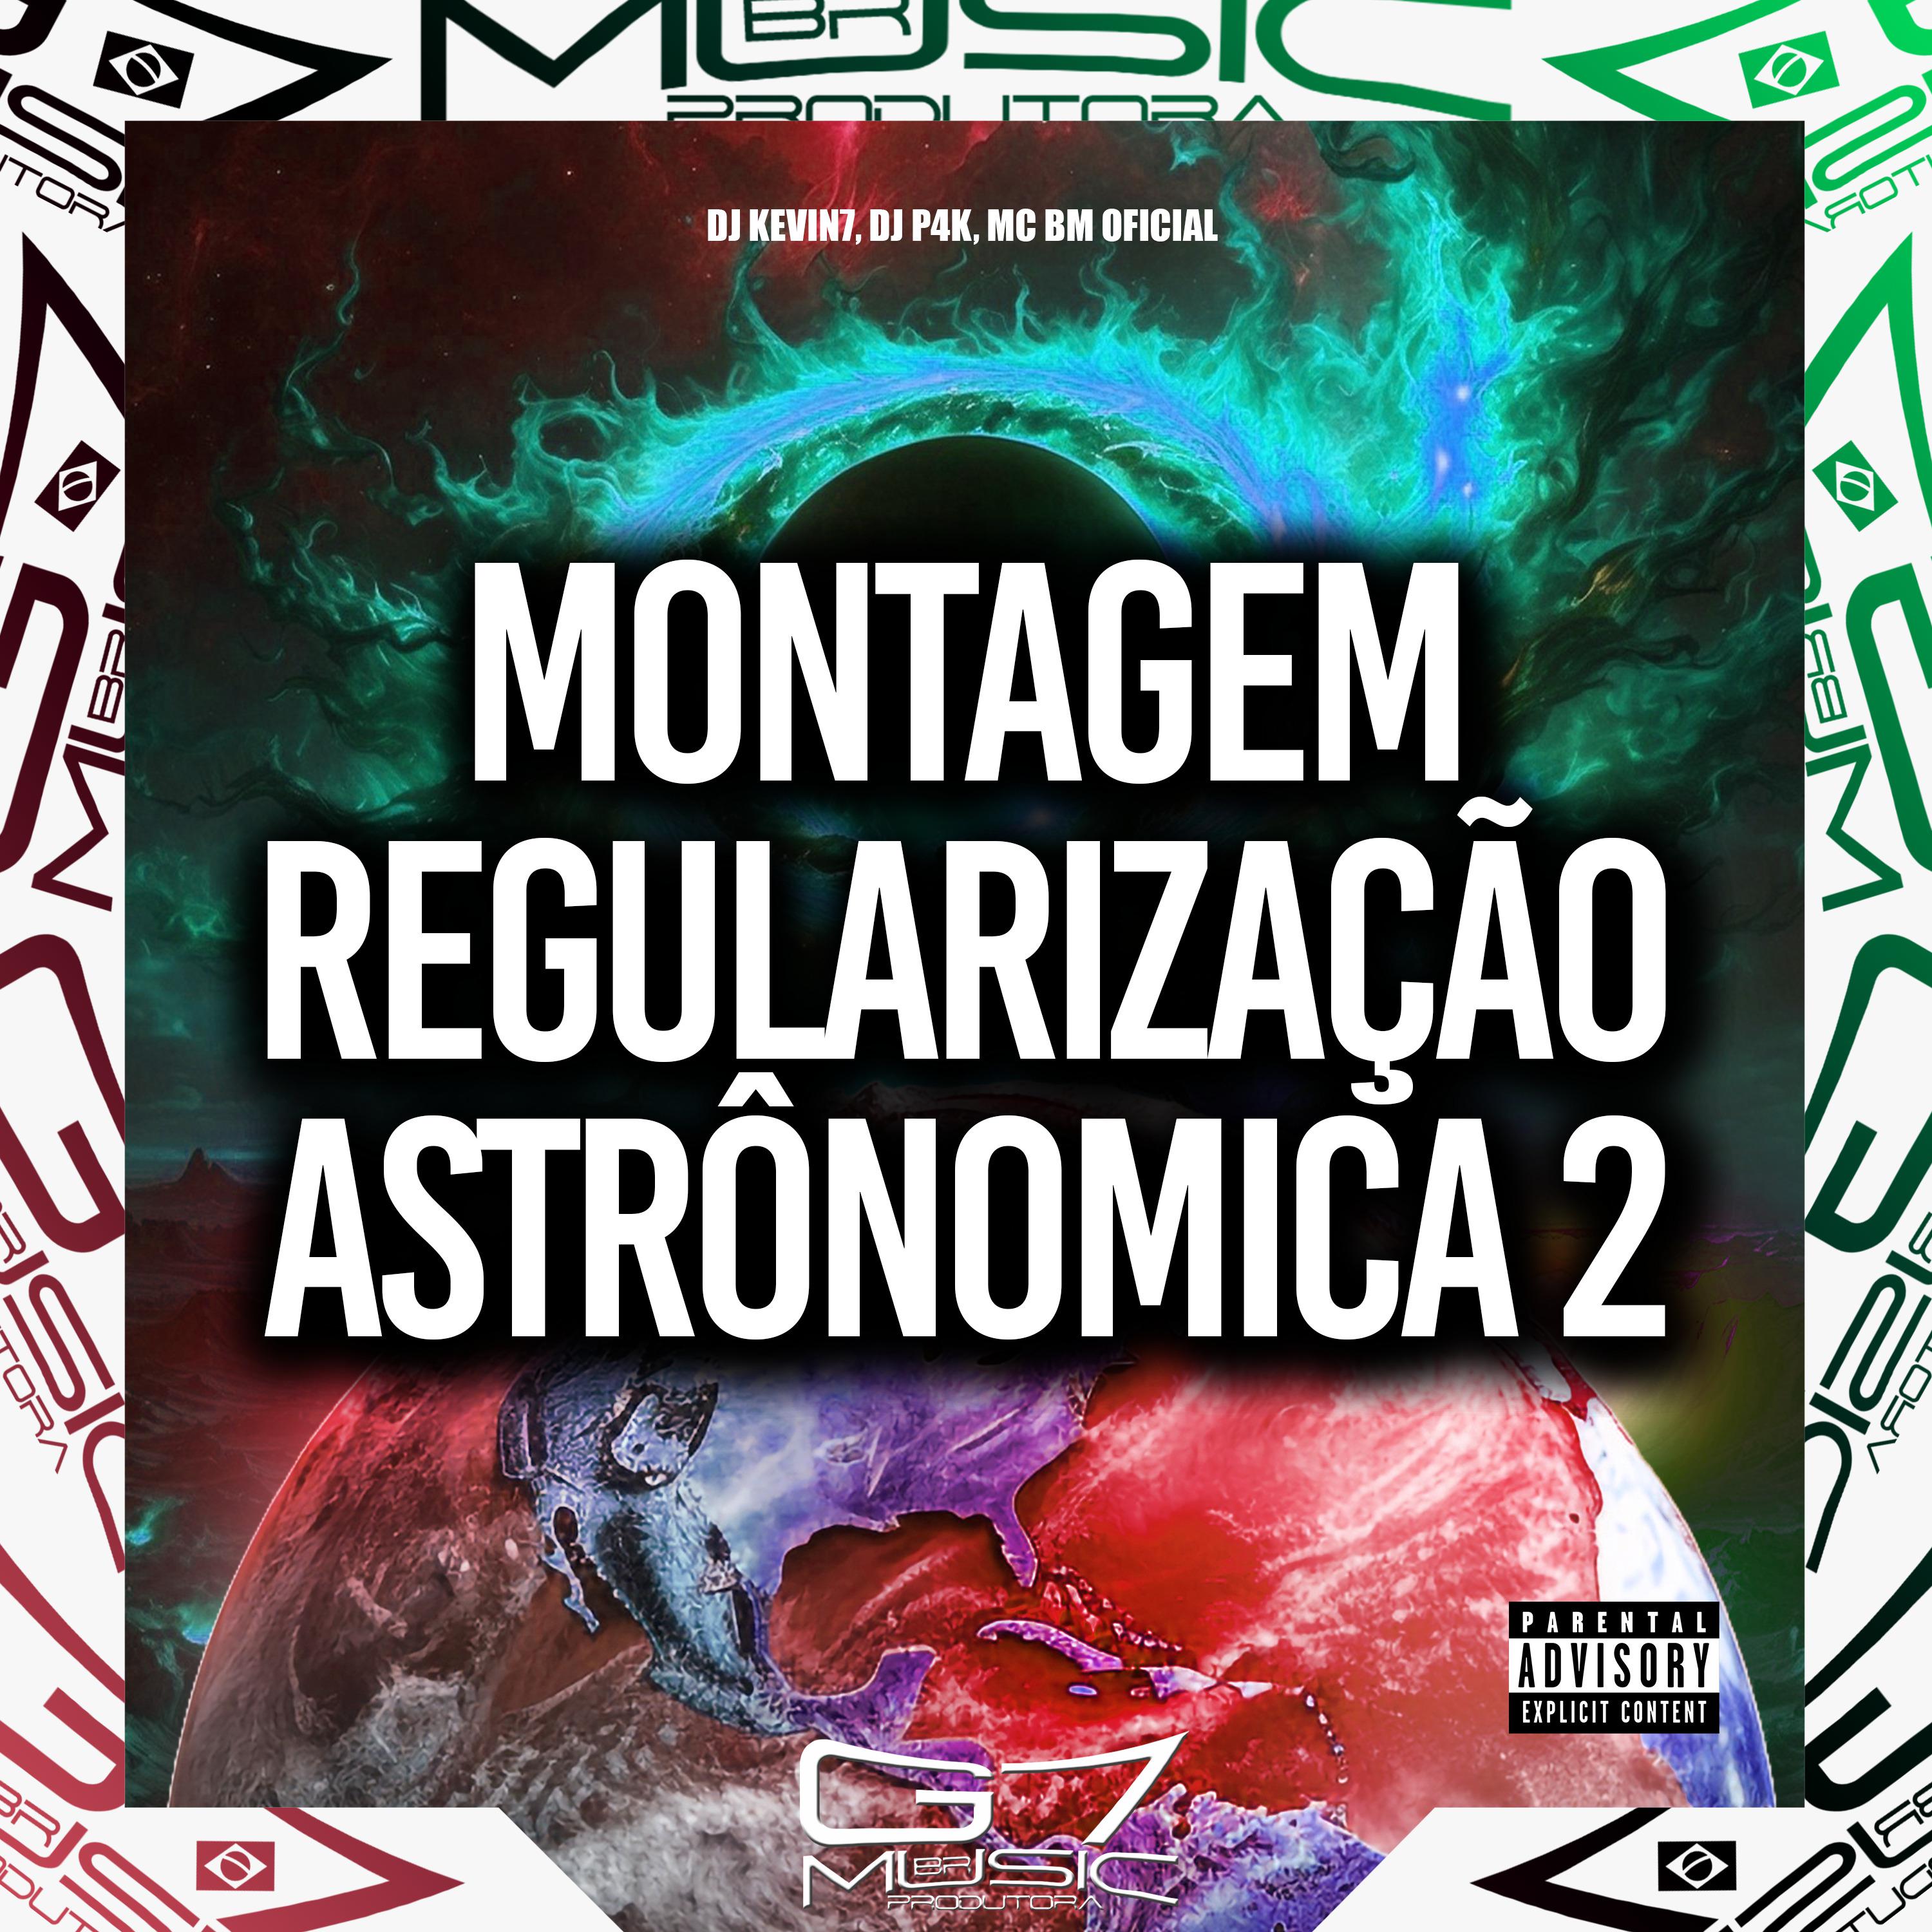 DJ KEVIN7 - Montagem Regularização Astrônomica 2